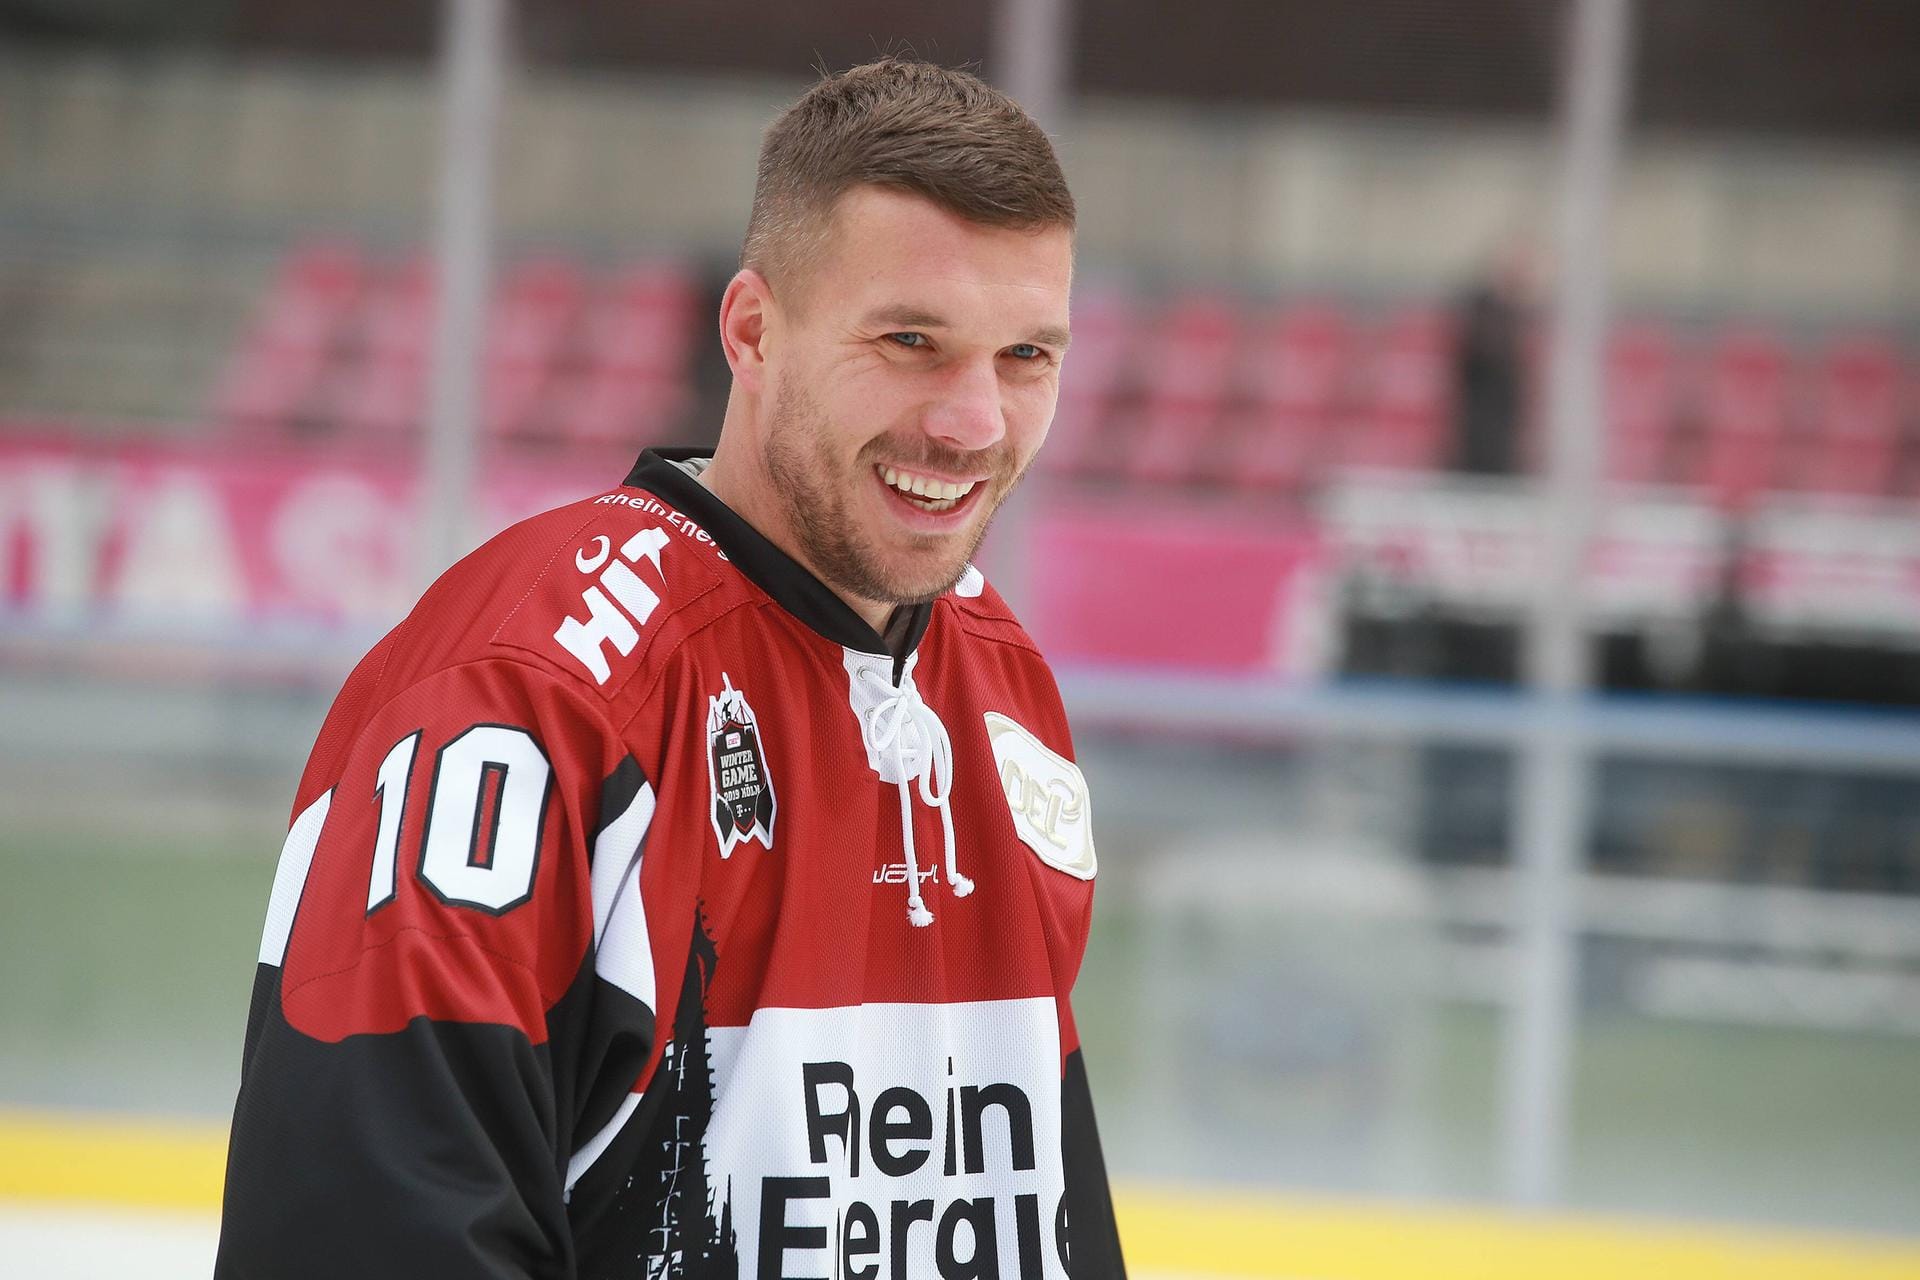 Lukas Podolski im Trikot der Kölner Haie: Der Fußballprofi versprach, sollten die Haie 100.000 virtuelle Tickets an ihre Fans verkaufen, werde er zum Eishockey-Spieler. Der Eishockey-Klub erreichte das Ziel im November 2020.